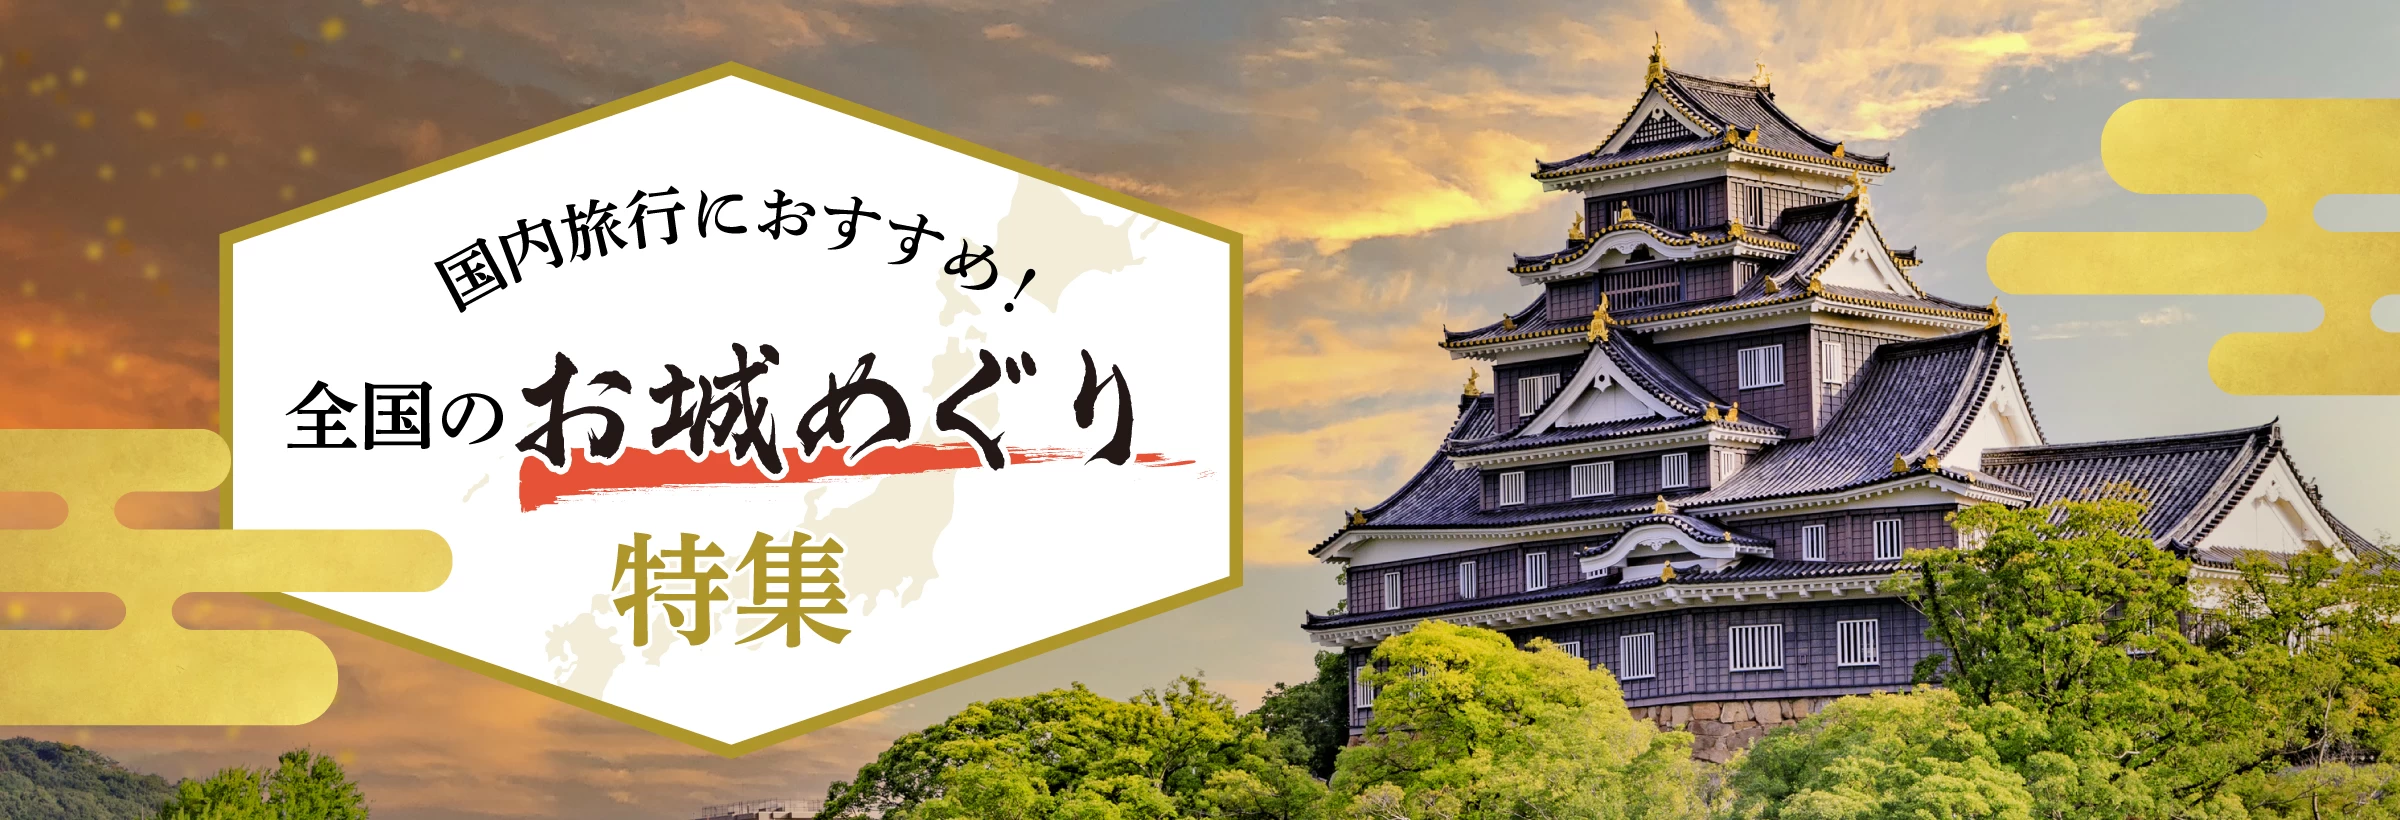 日本の歴史を物語る美しく荘厳な城。なかには、天守閣が現存する貴重なお城や、世界遺産に登録されているお城も。大河ドラマでは舞台としても度々登場し、気になっている方も多いのではないでしょうか。今回は国内旅行におすすめなお城めぐりプランをご紹介します。